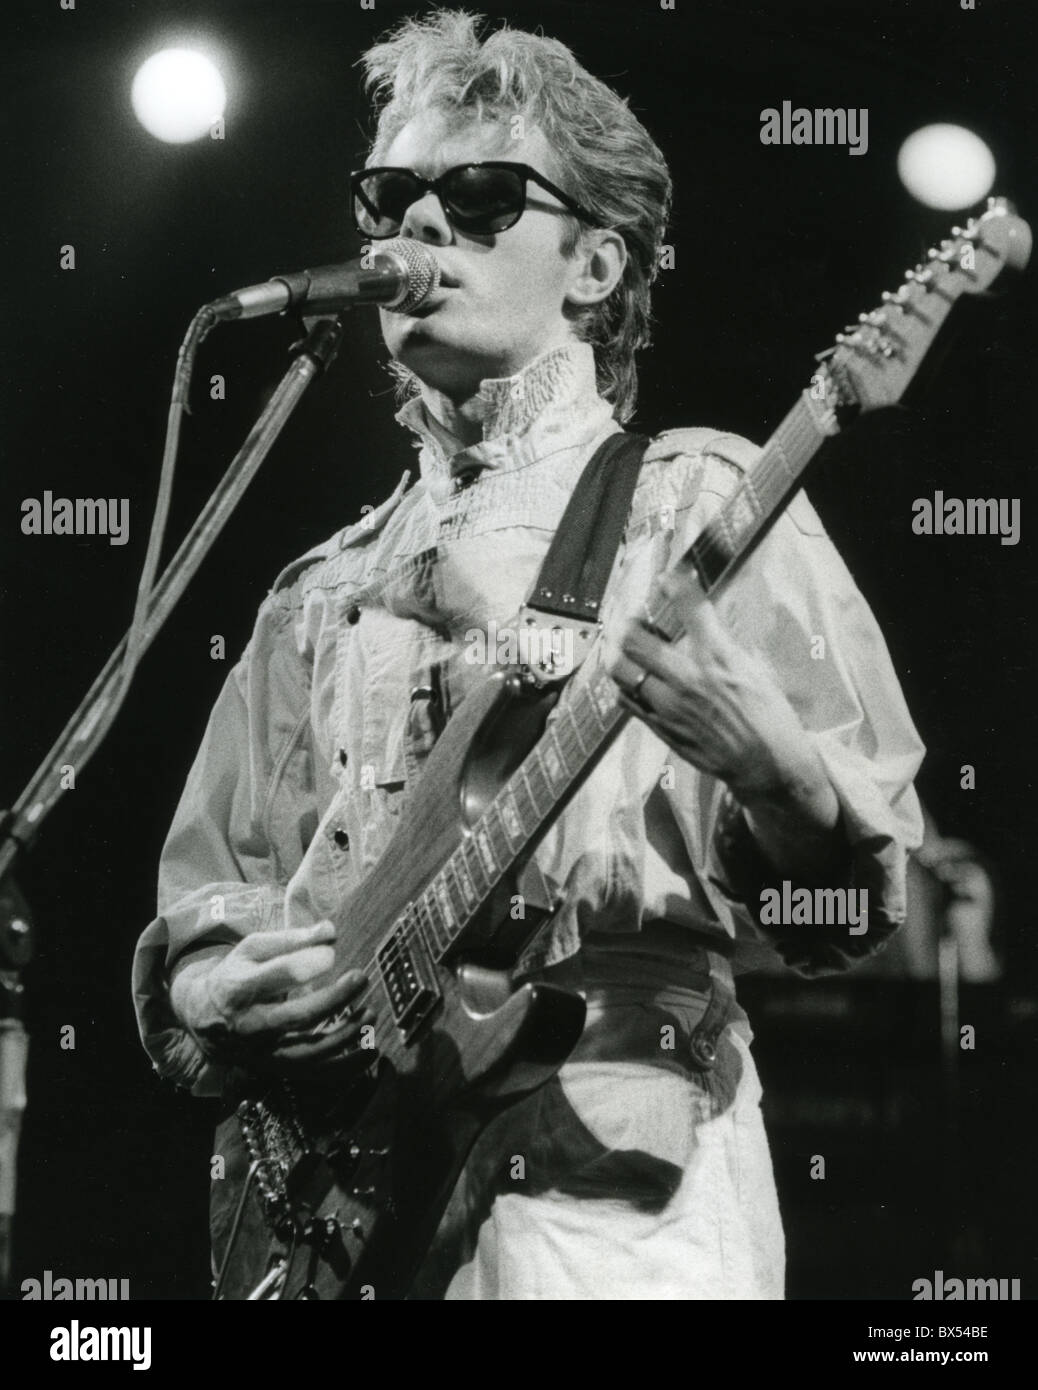 NIK KERSHAW englische pop-Musiker ca. 1987. Foto Stephen Woodd Stockfoto